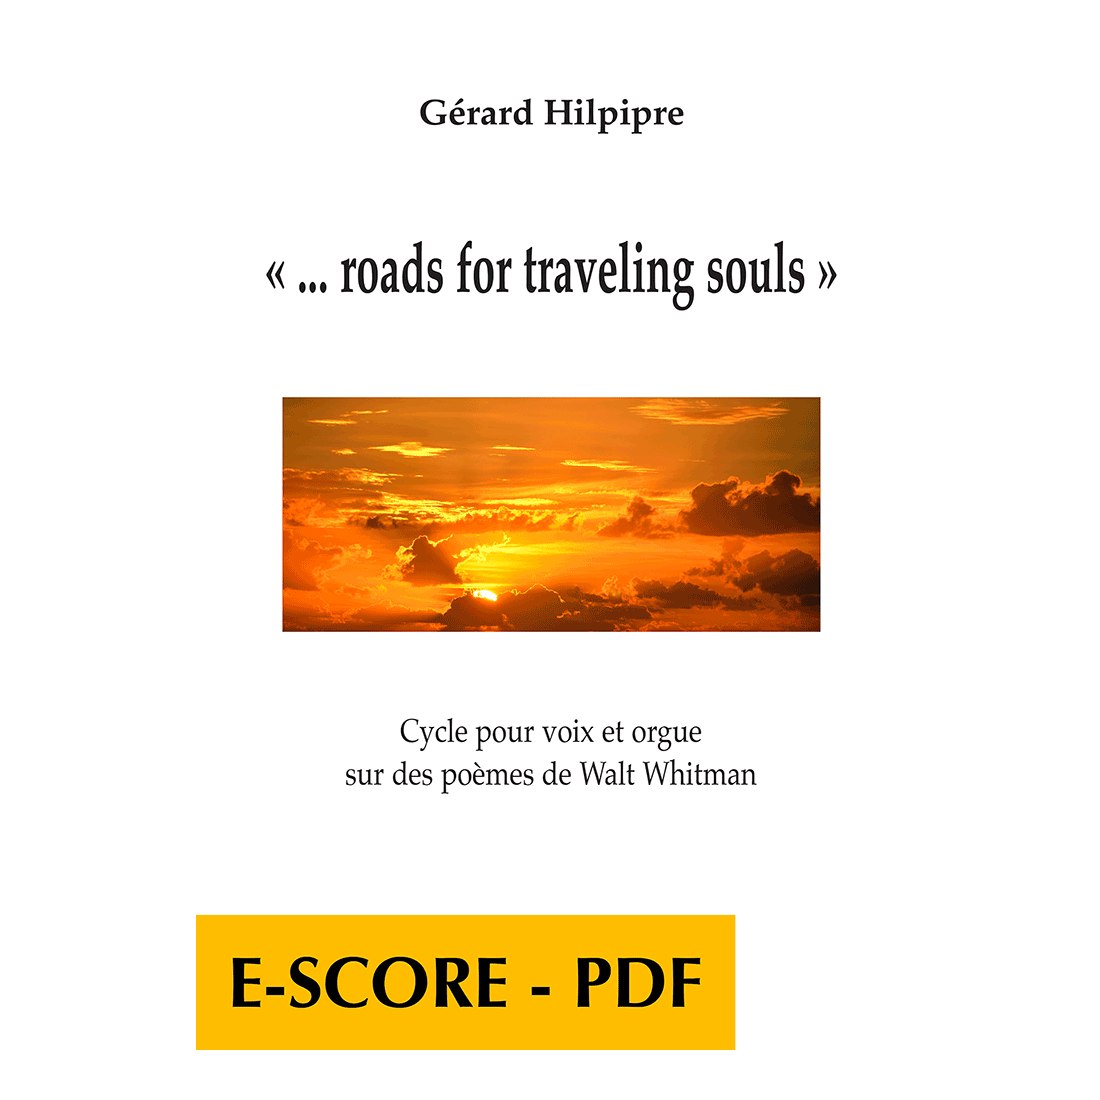 Roads for traveling souls pour voix et orgue - E-score PDF